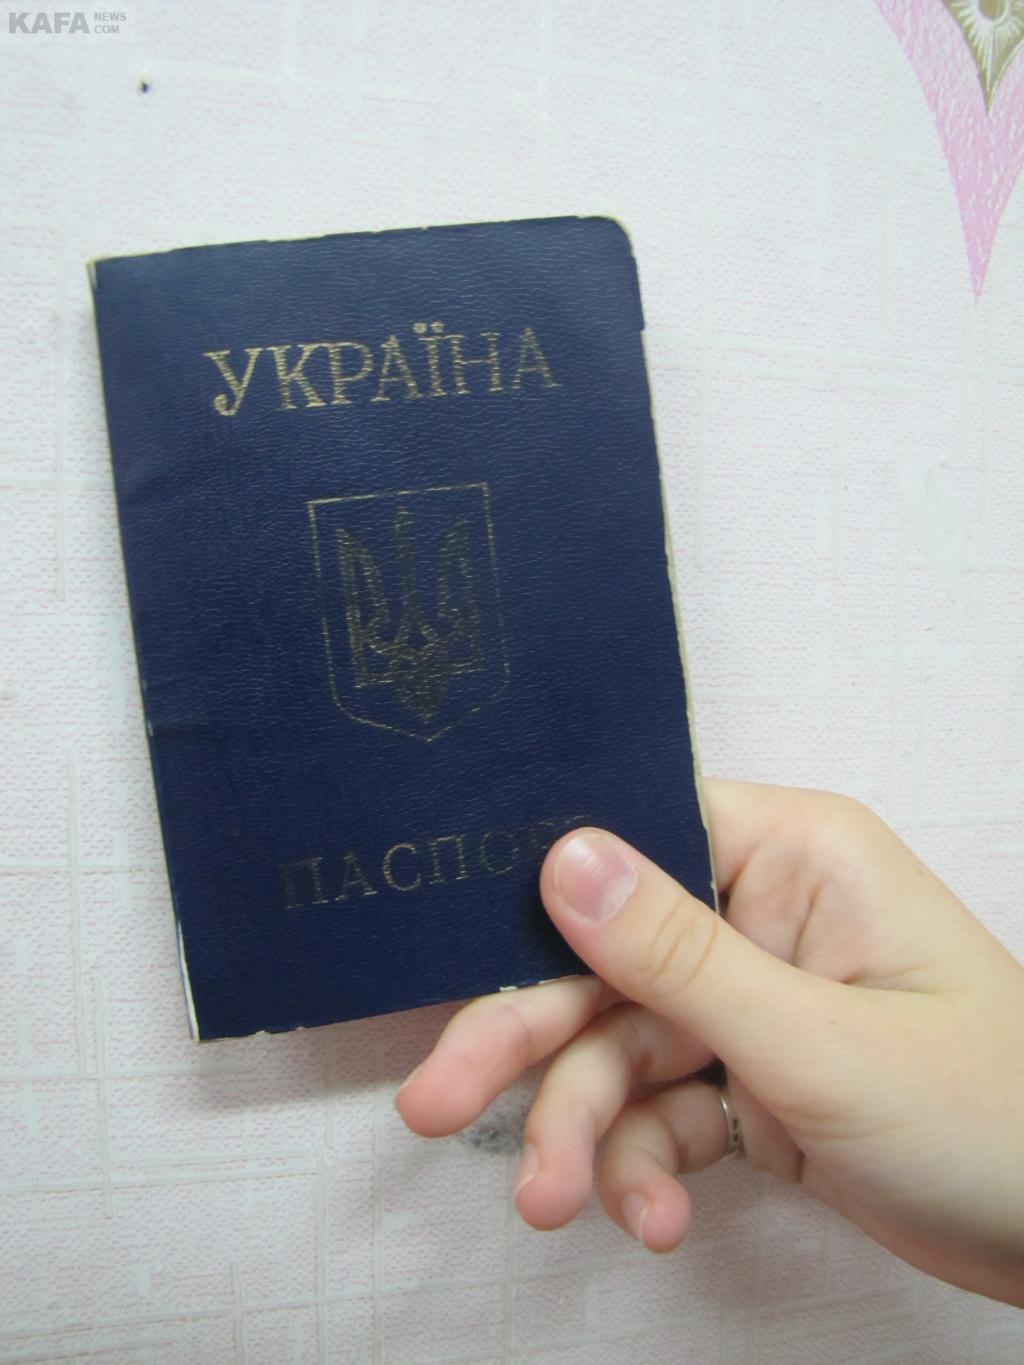 Найден паспорт Украины